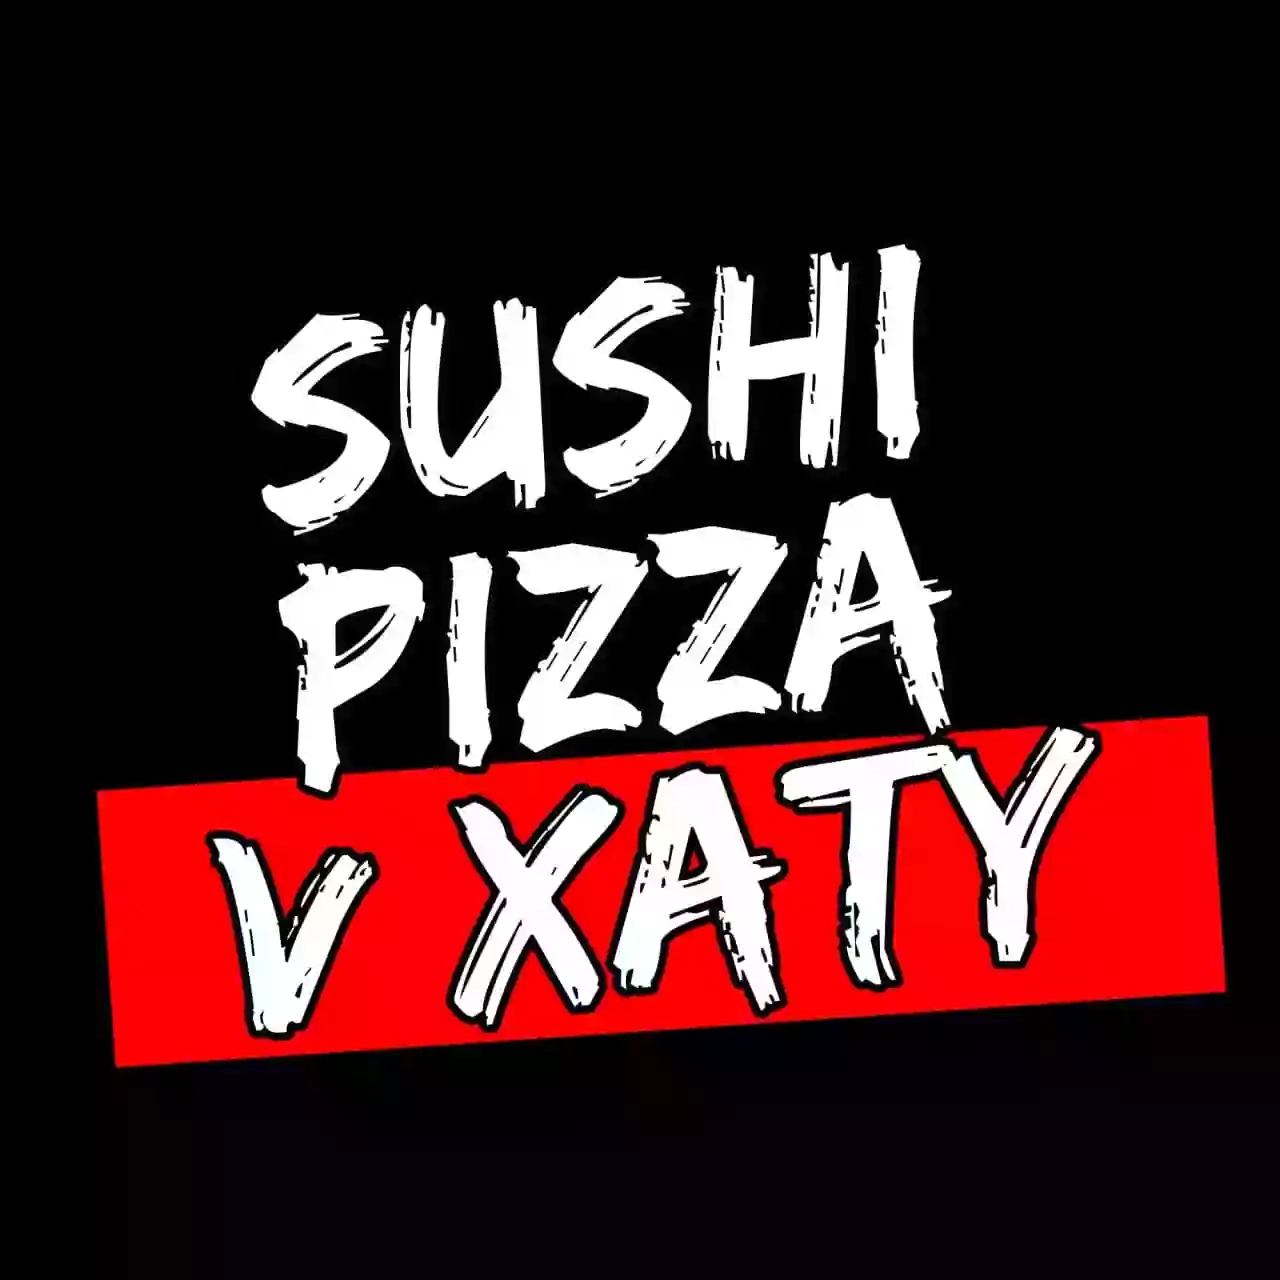 Суши & Пицца v Хату